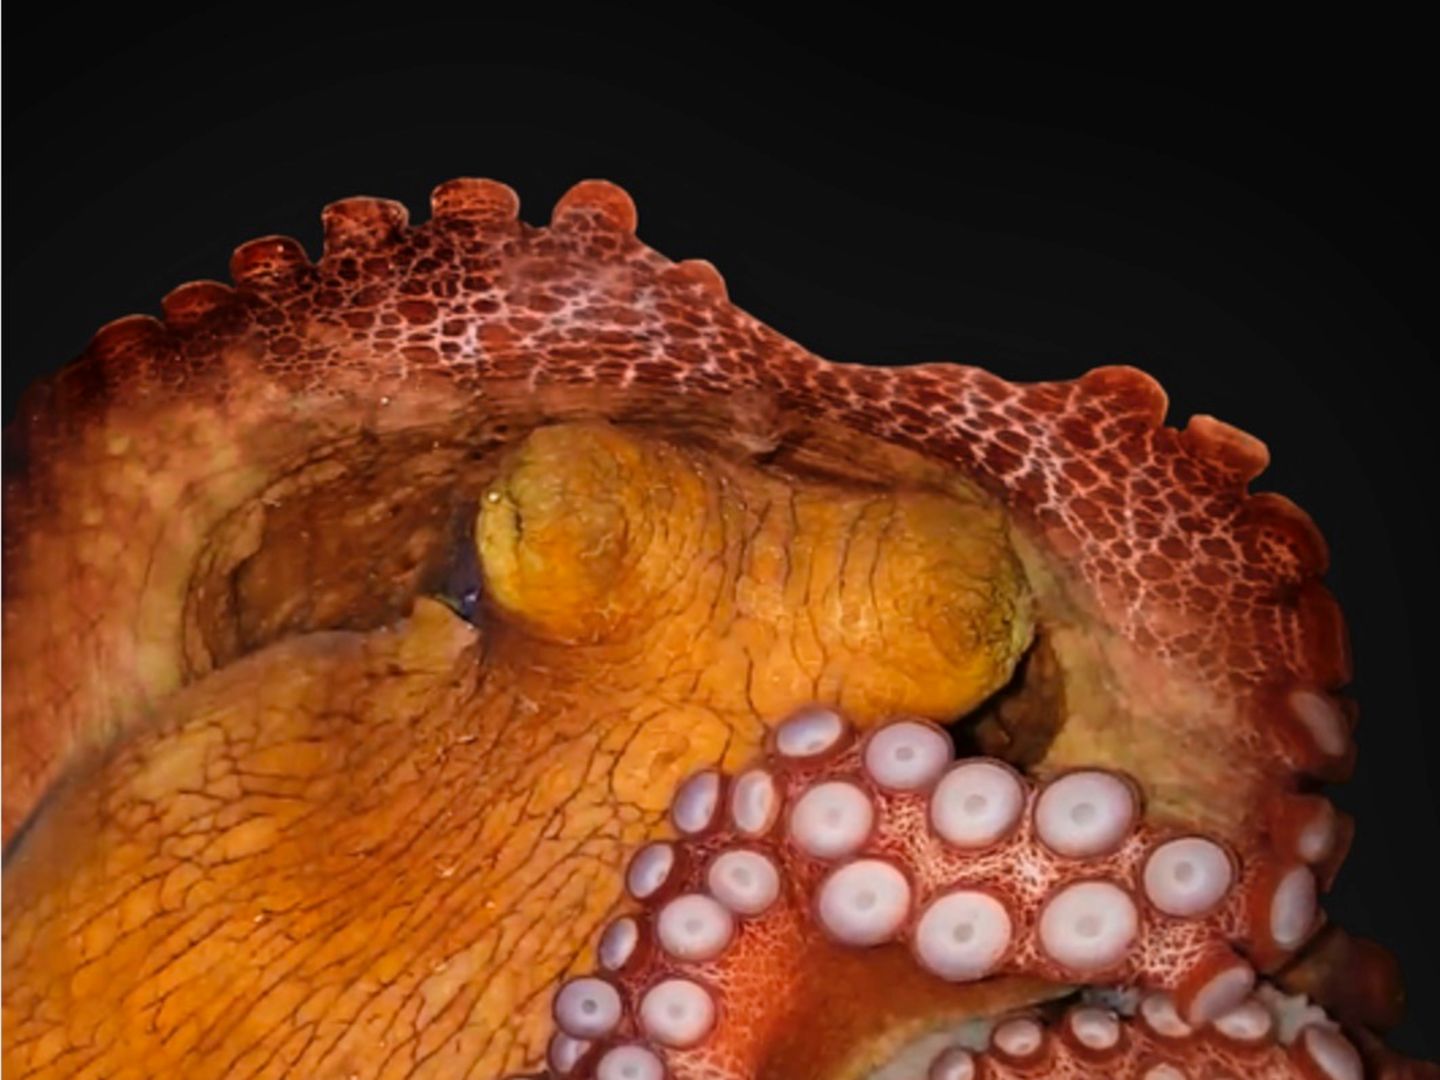 Tierwelt: Ein schlafender Oktopus. Ob das Tier auch träumt, soll nun weiter erforscht werden